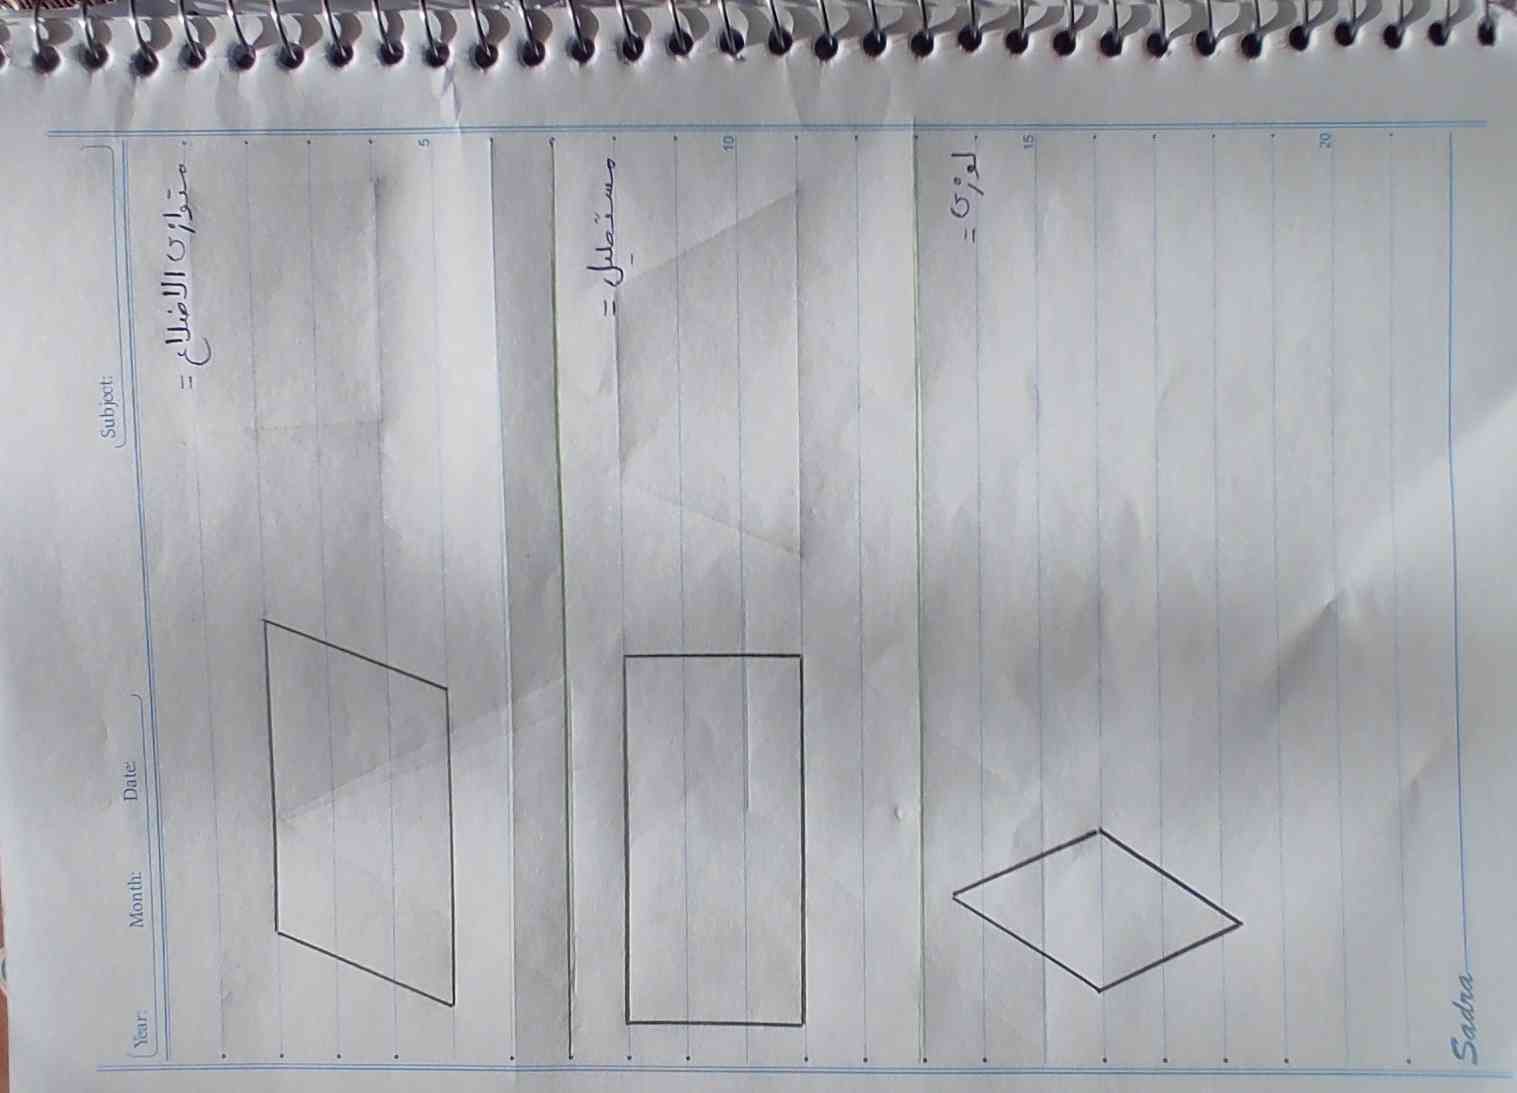 از خودتون ضلع این شکل ها و زاویه مکمل و زاویه های مجاور مشخص کنید تاج میدم 